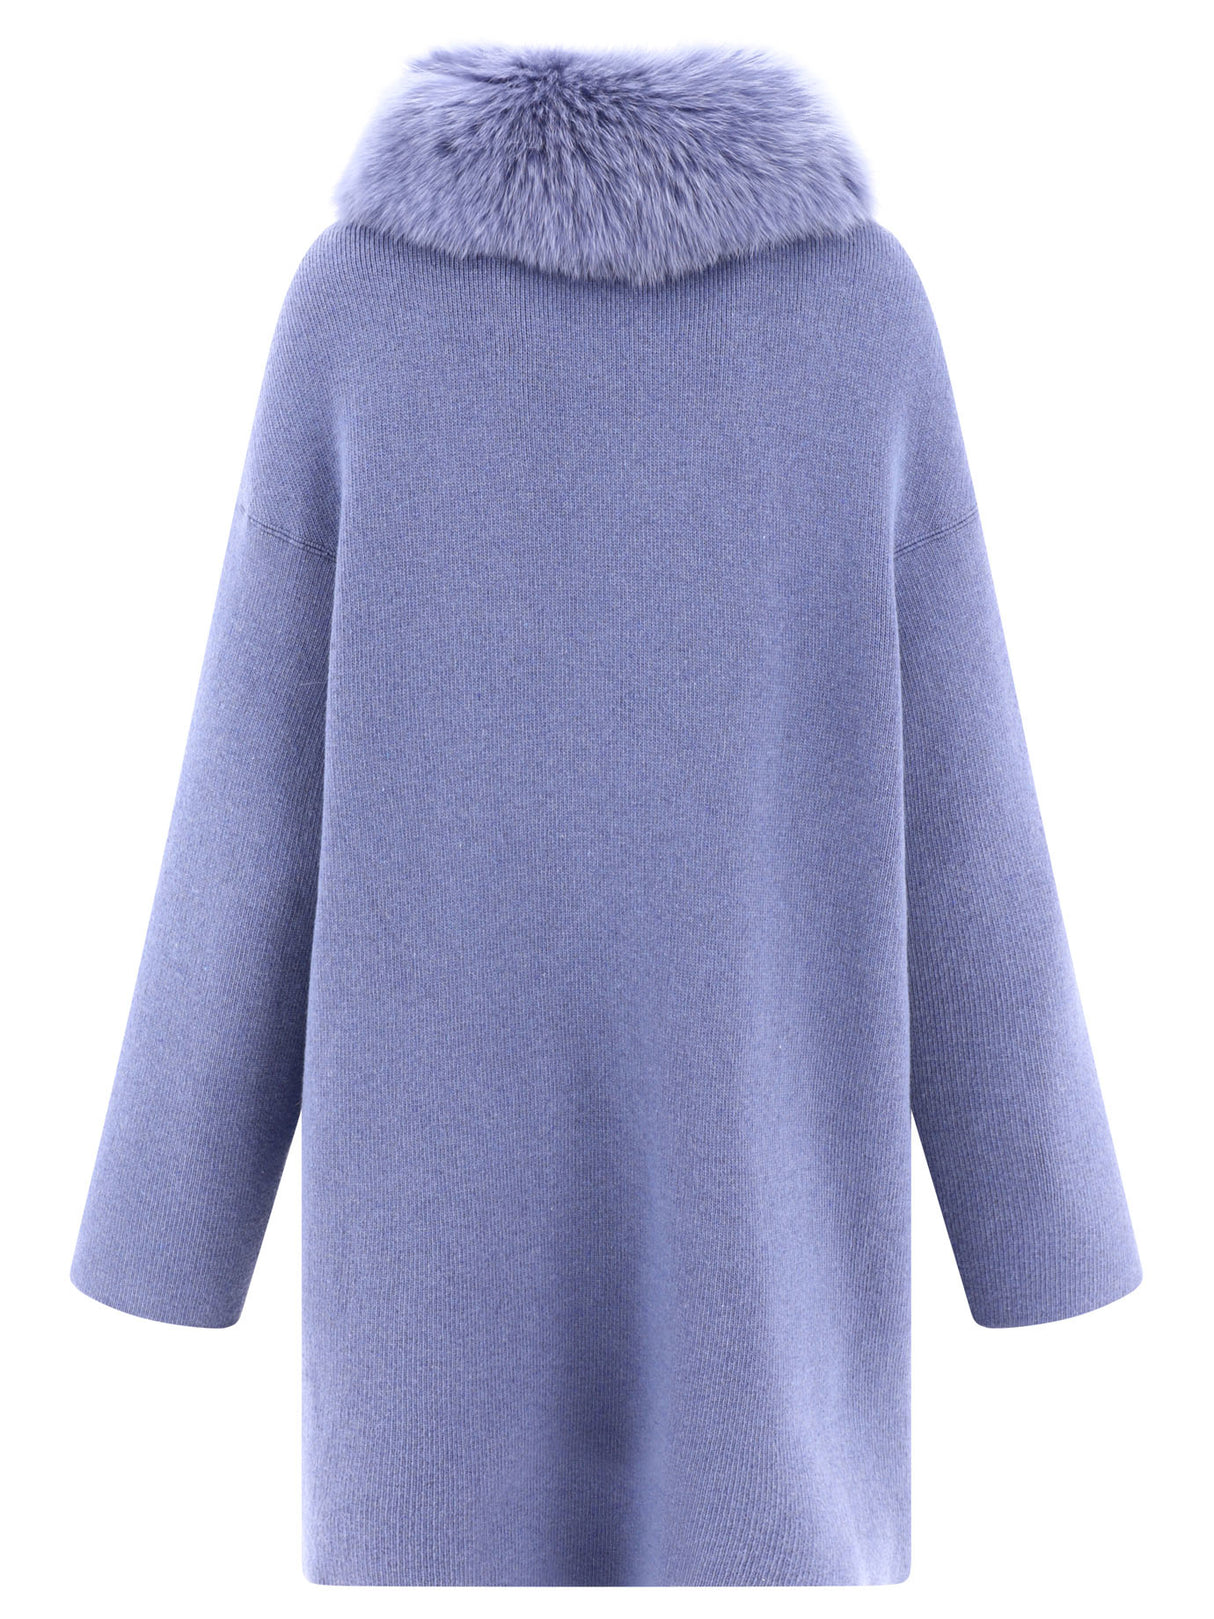 FW23 女款羊毛/羊绒外套 - 浅蓝色